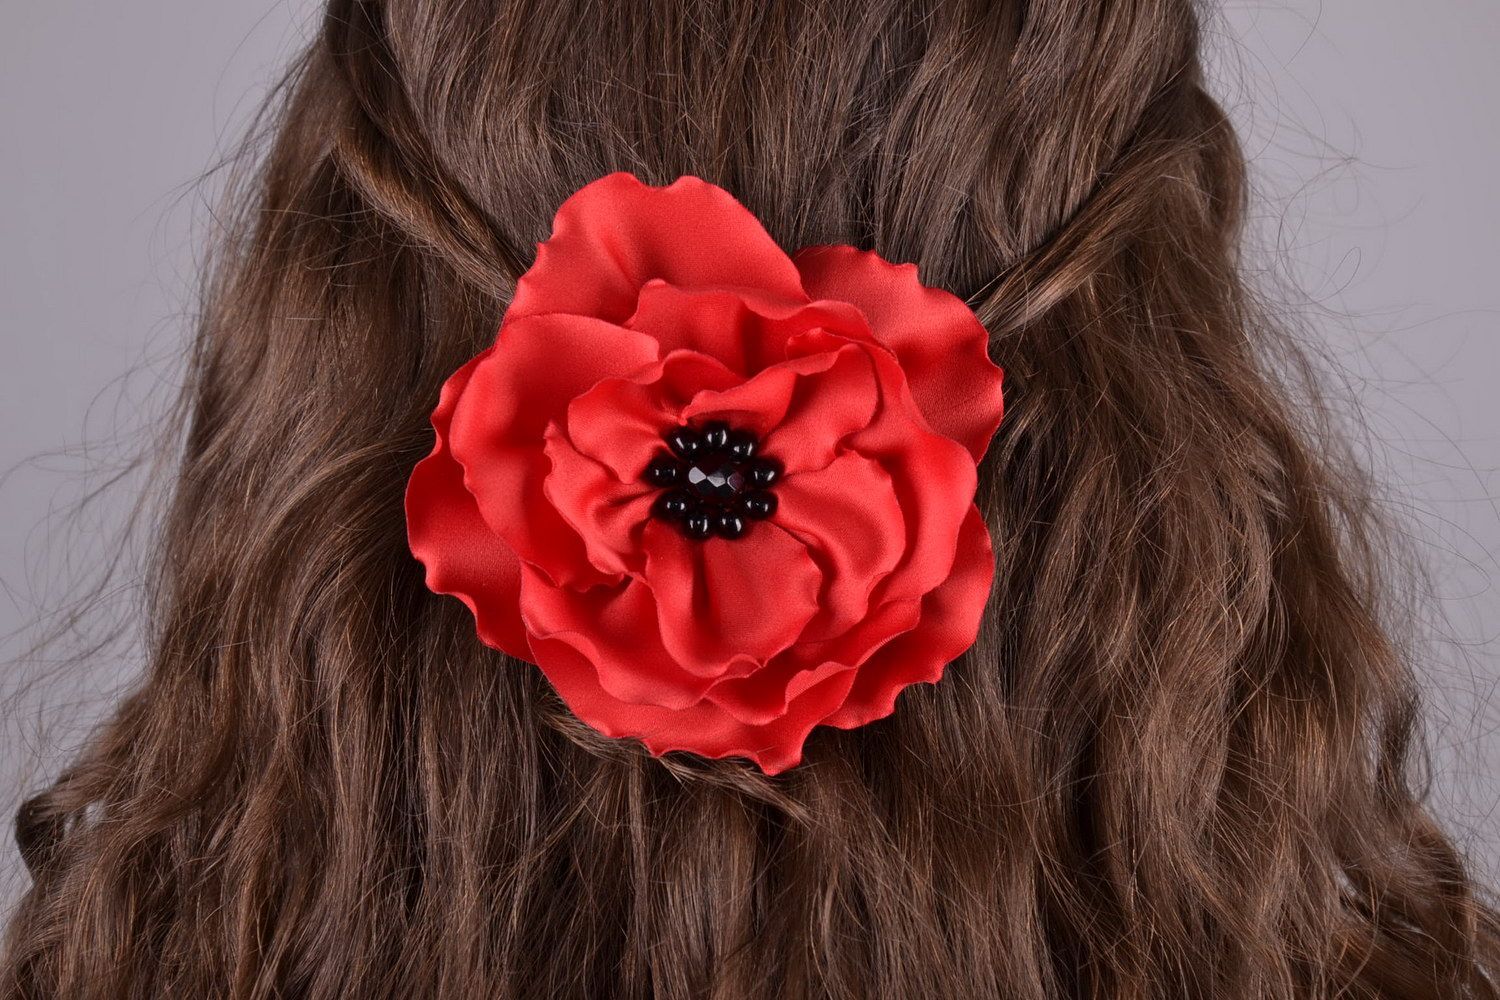 Grampo para cabelo broche feito na forma de uma flor Papoula vermelha foto 1